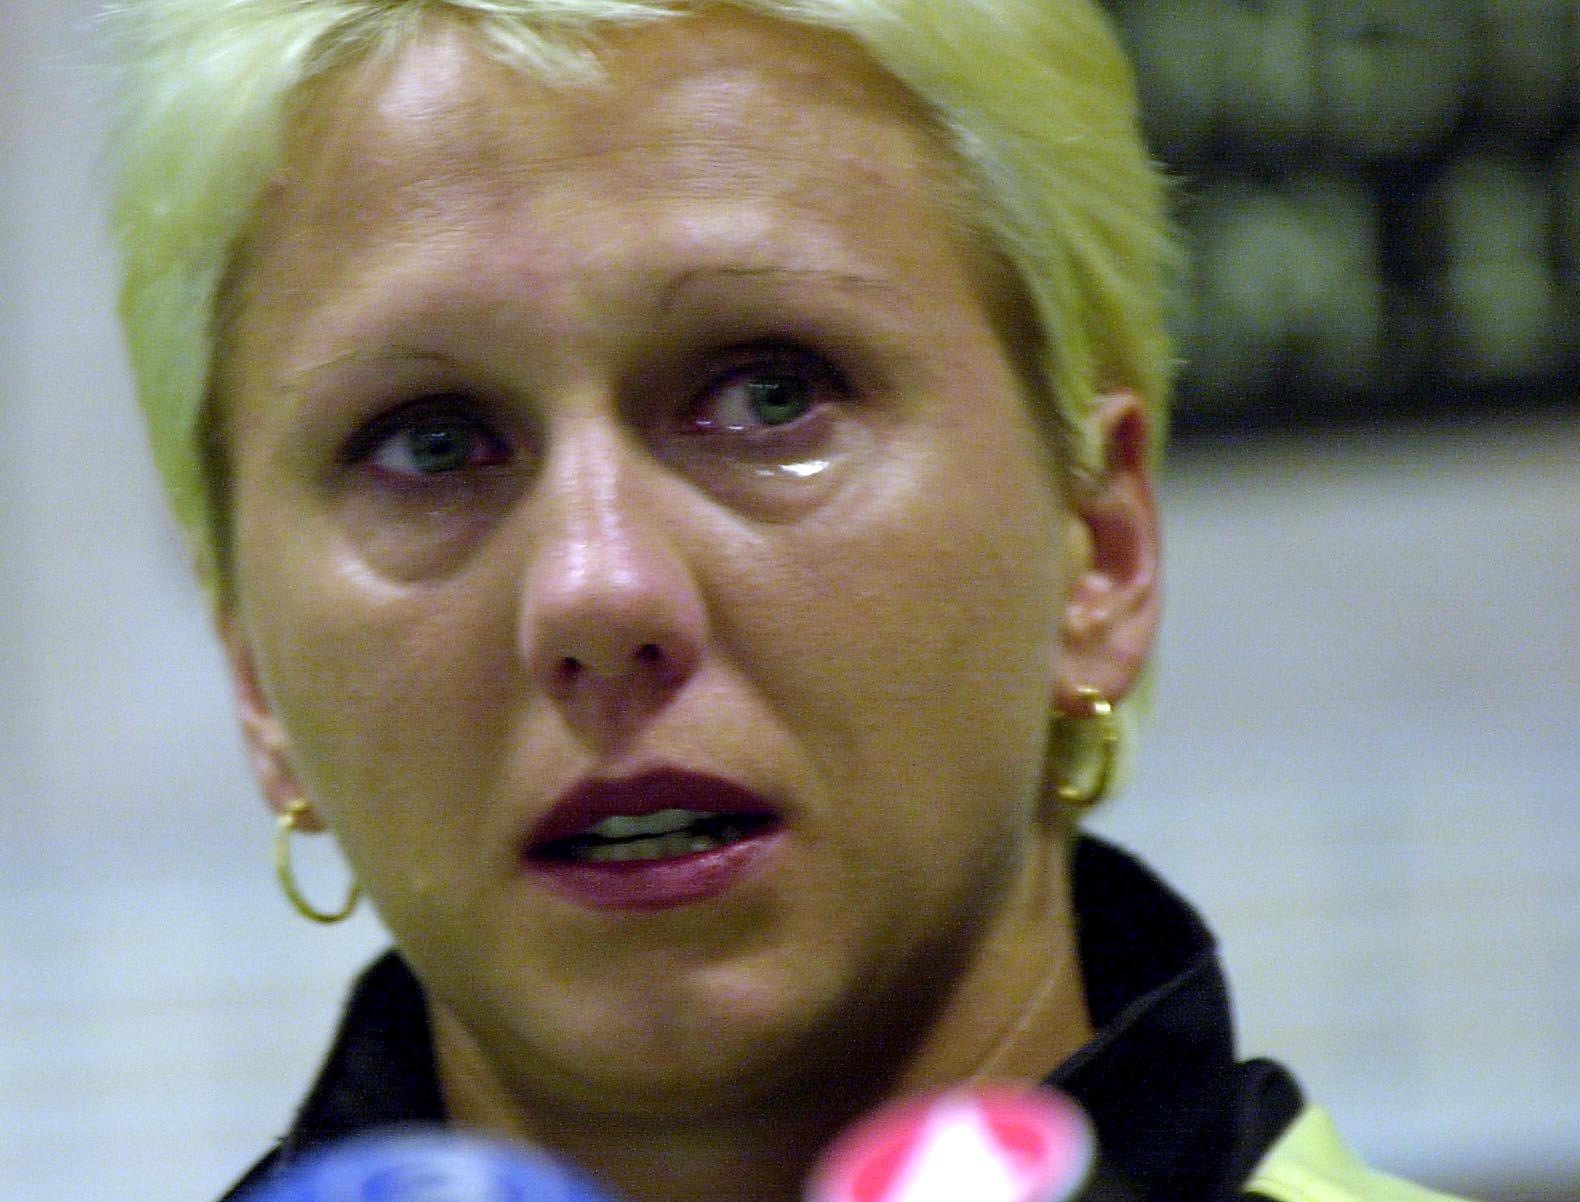 Ludmilas tårar. I juli 2000 gav hon upp löparkarriären på grund av skador. Arkivbild.